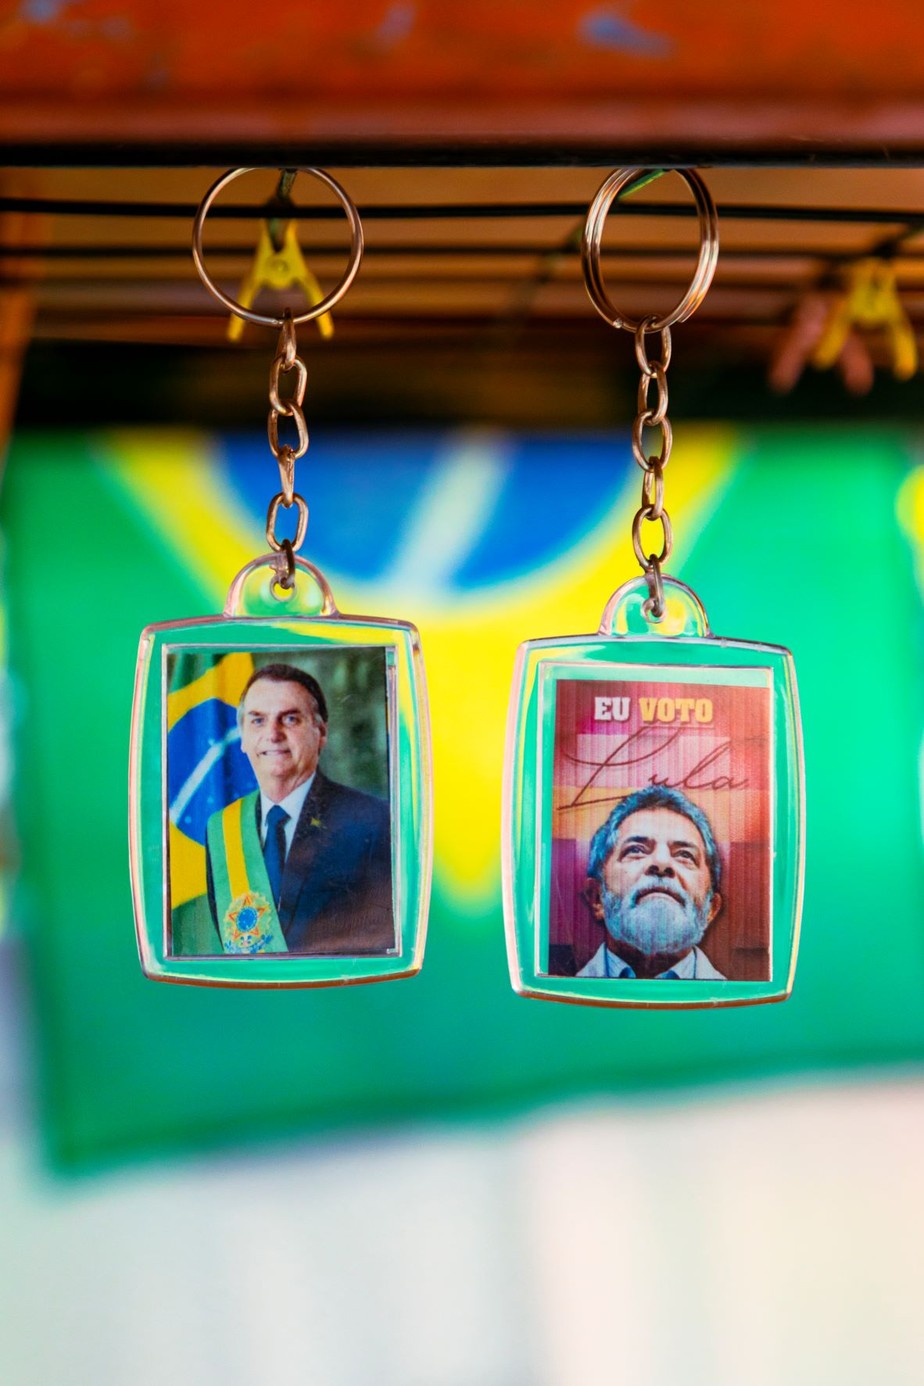 Chaveiros à venda em comércio popular em Largo do Machado, no Rio de Janeiro, com imagens de Bolsonaro e Lula